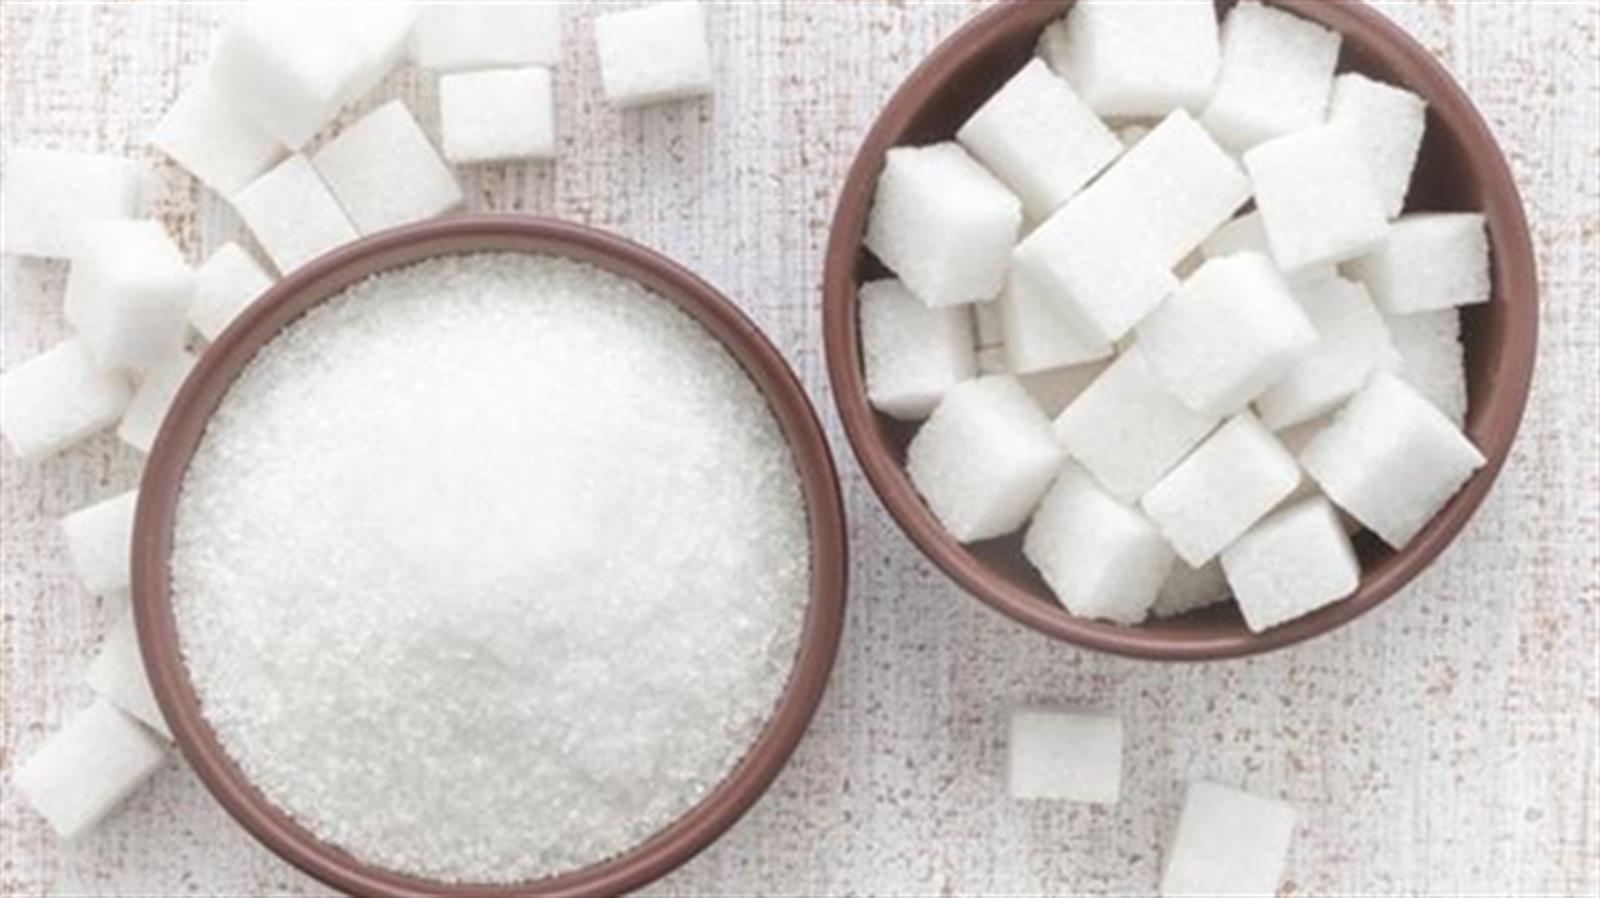 多吃鹽和糖對健康傷害很大?  快來了解很多人都不知道的危害